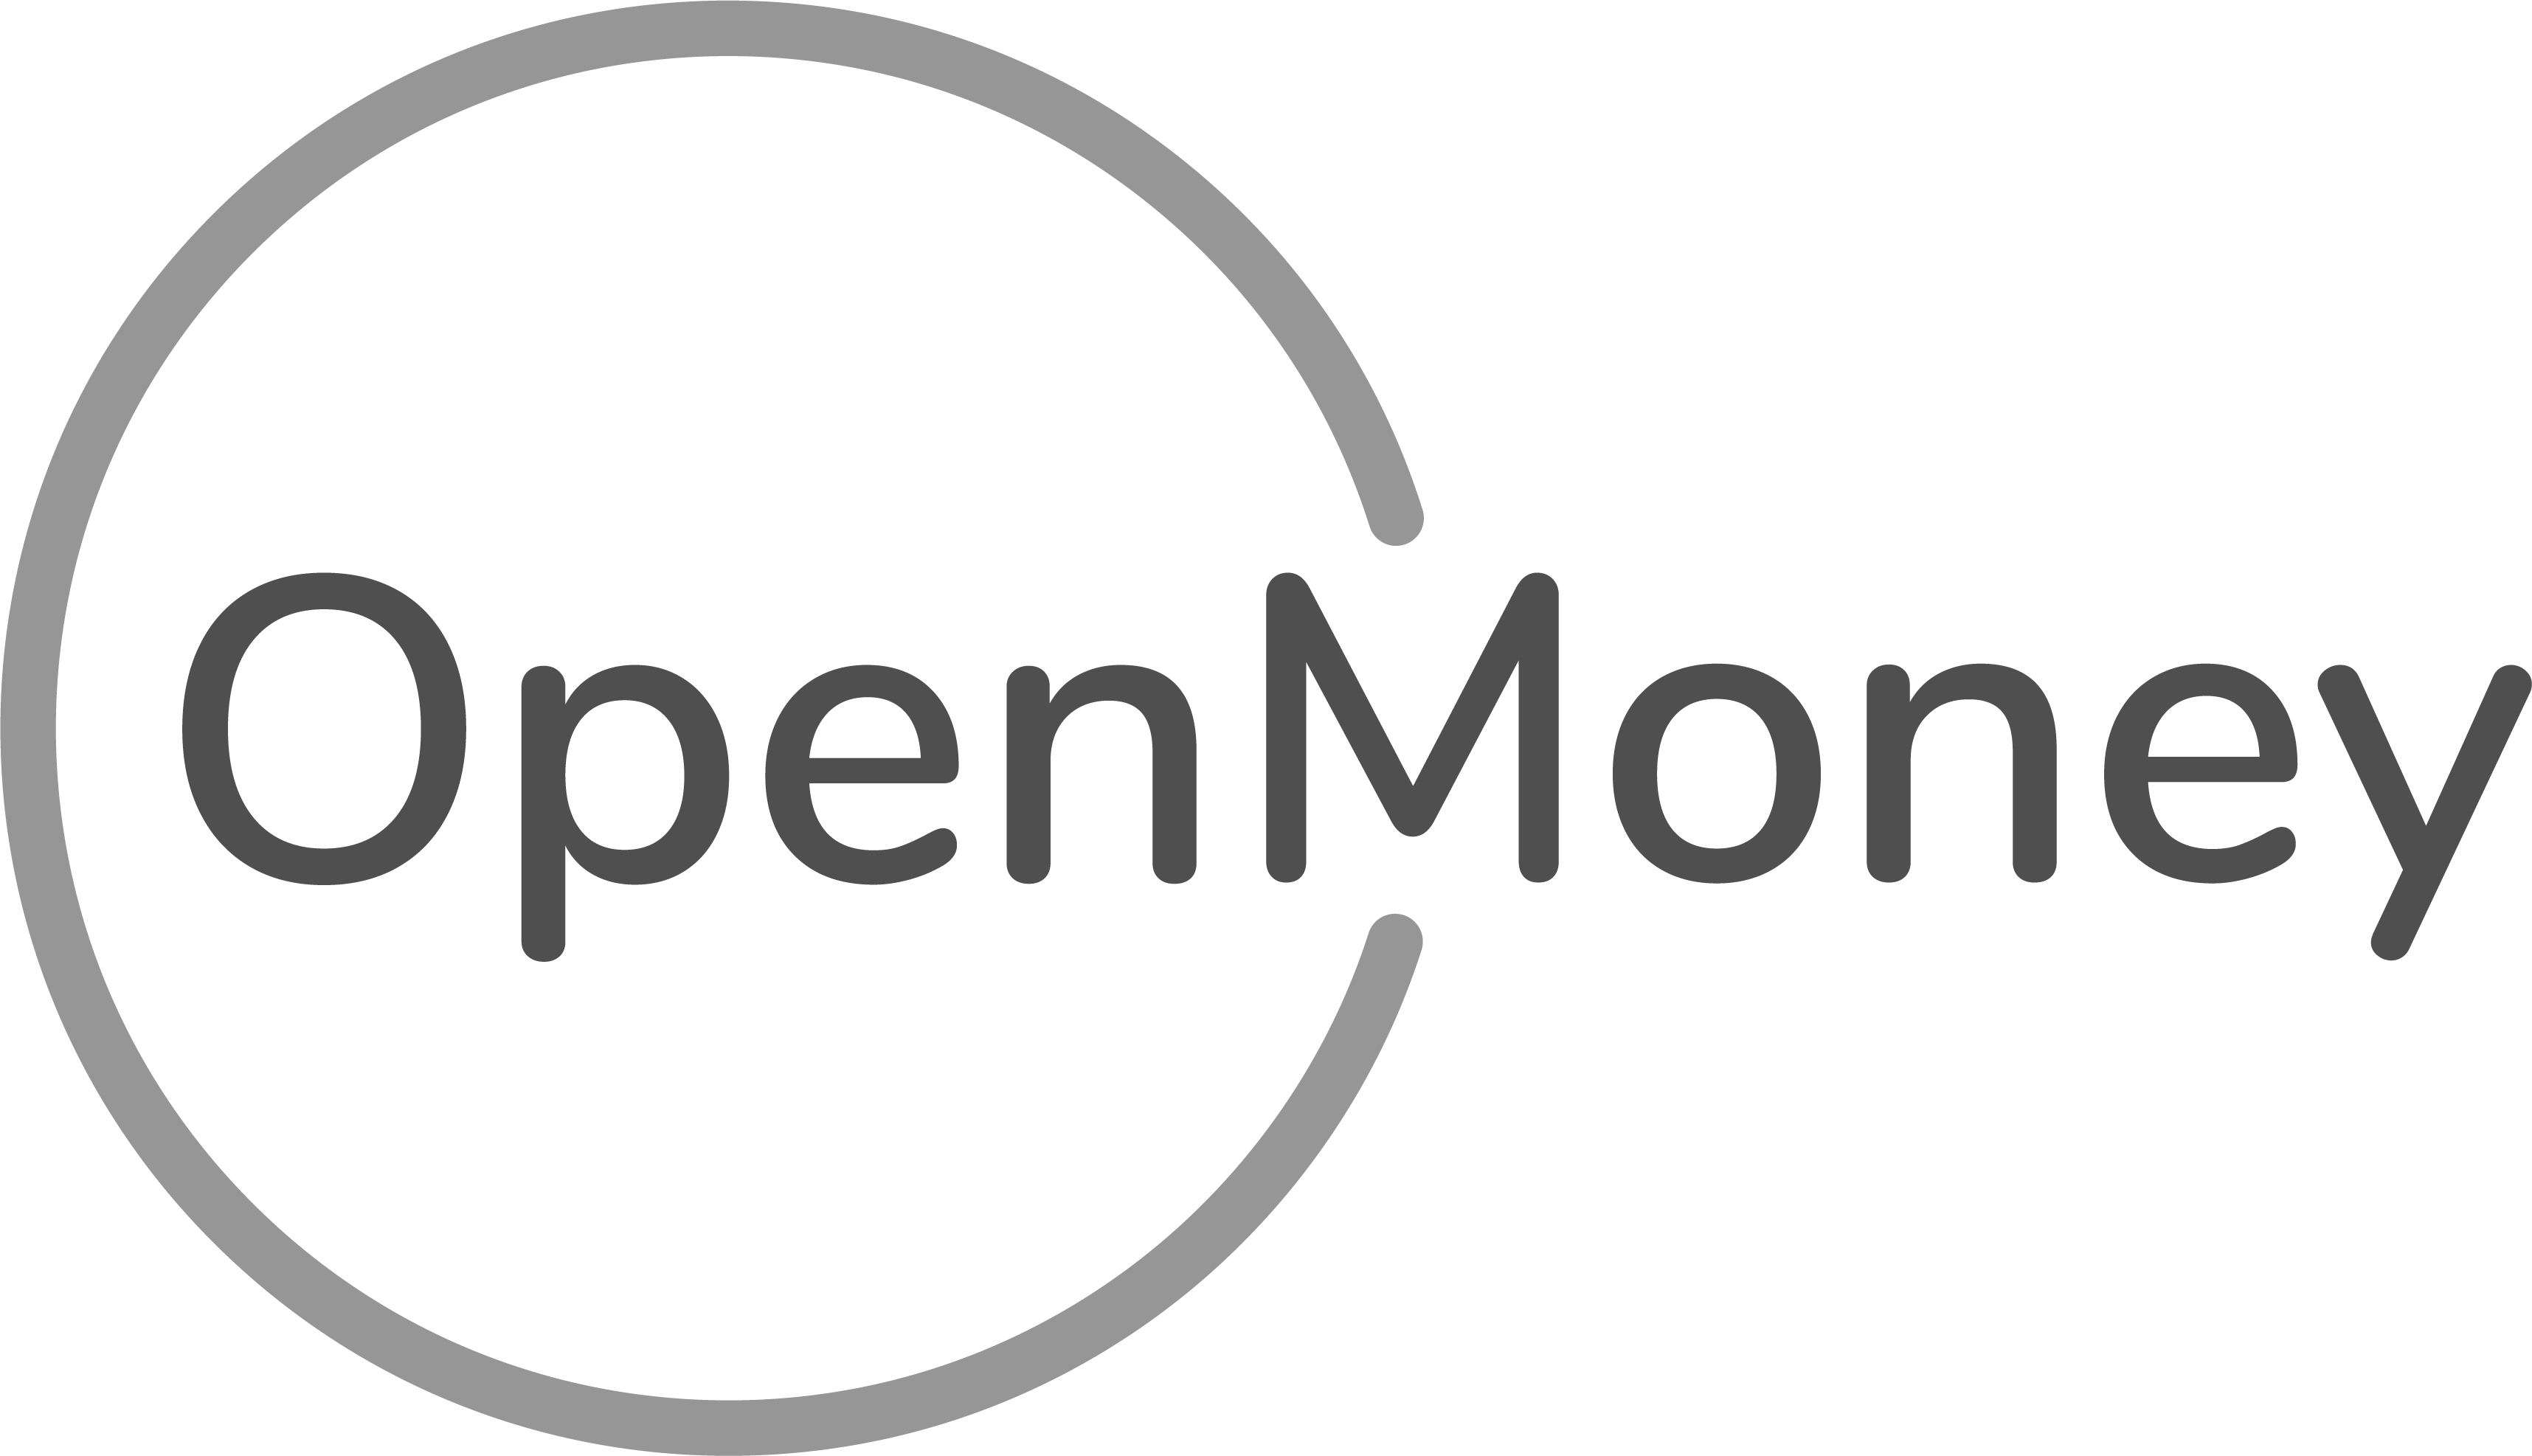 OpenMoney logo